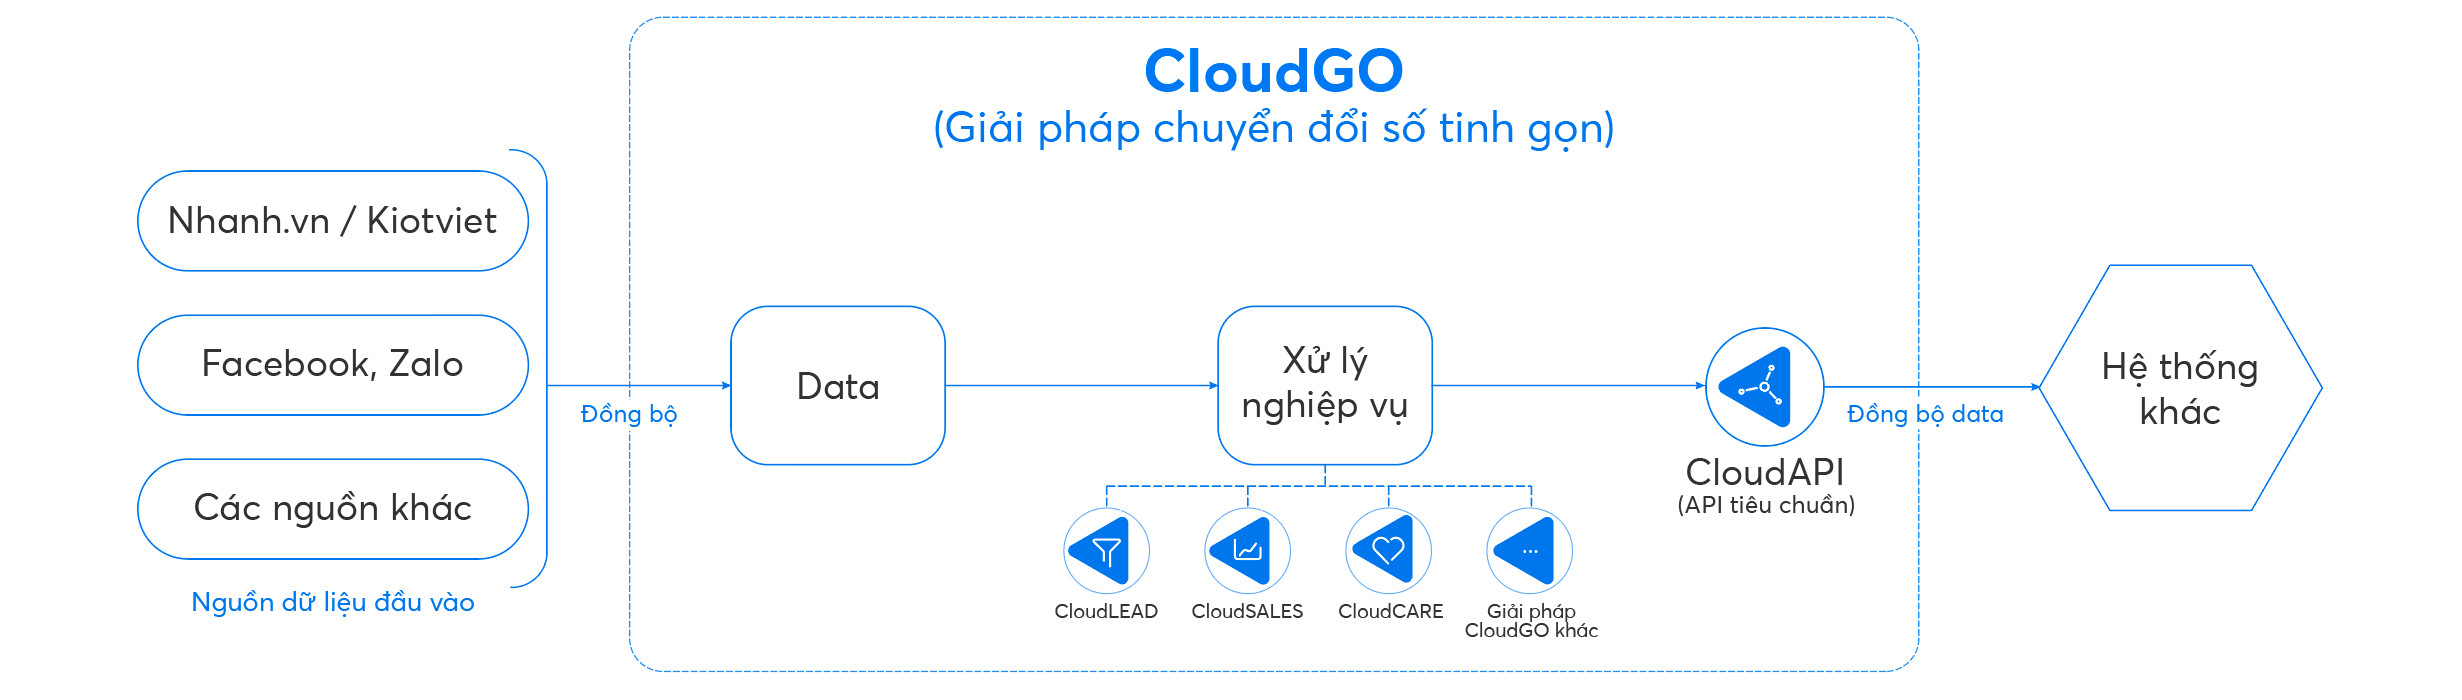 Quy trình tích hợp dữ liệu hệ thống bằng CloudAPI